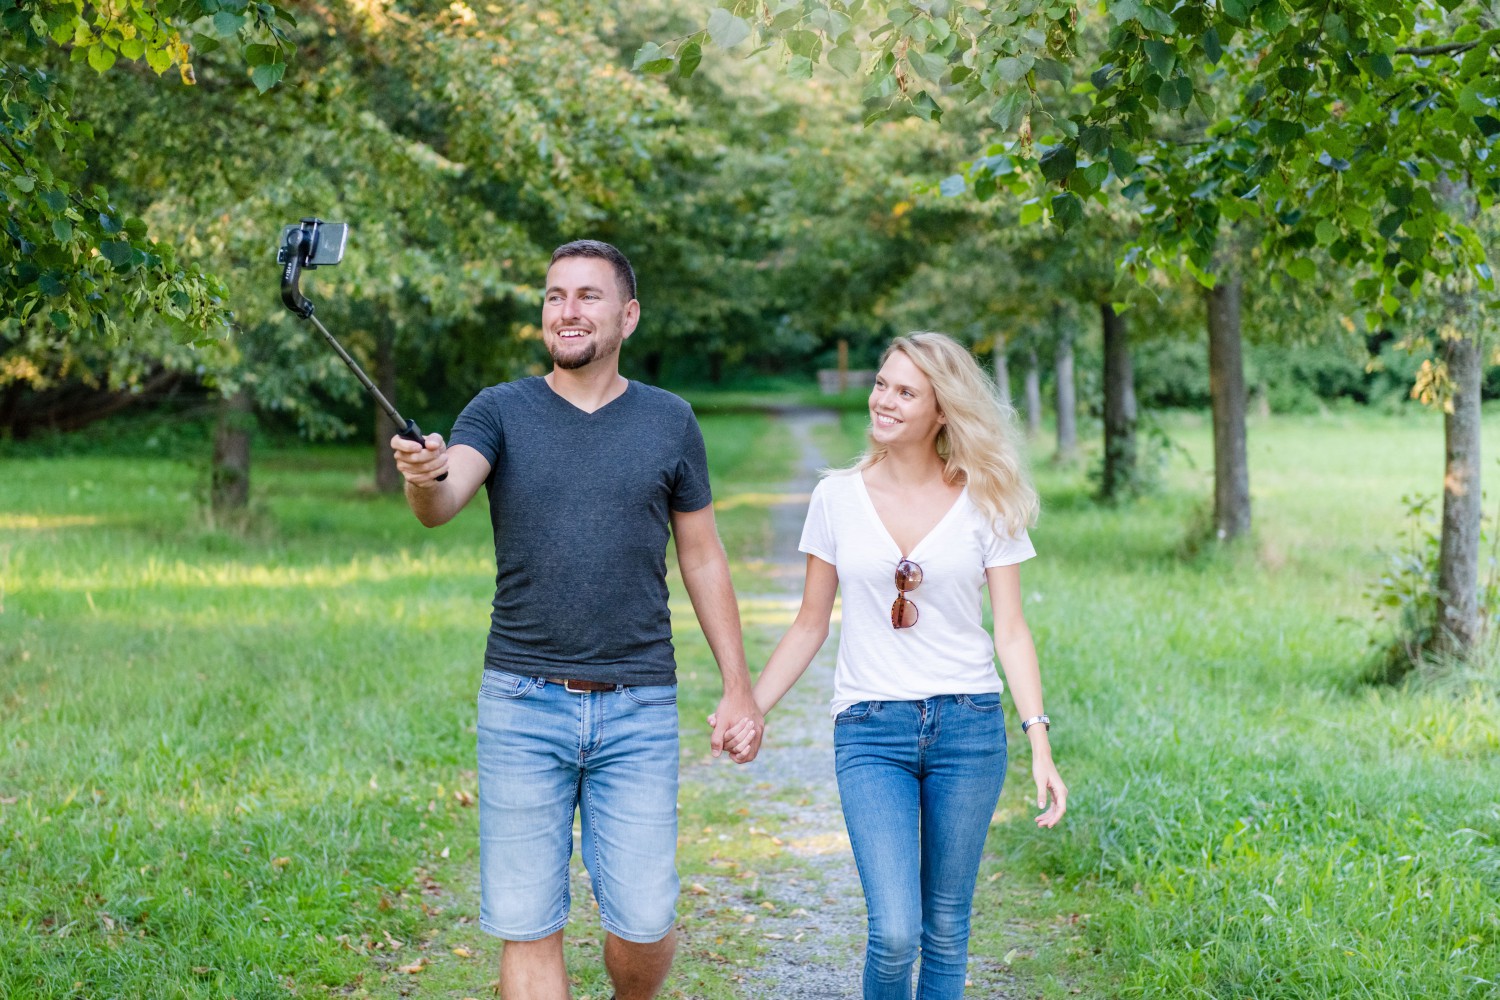 Selfie tripod FIXED Snap Action se stabilizátorem a dálkovou spouští, černý 